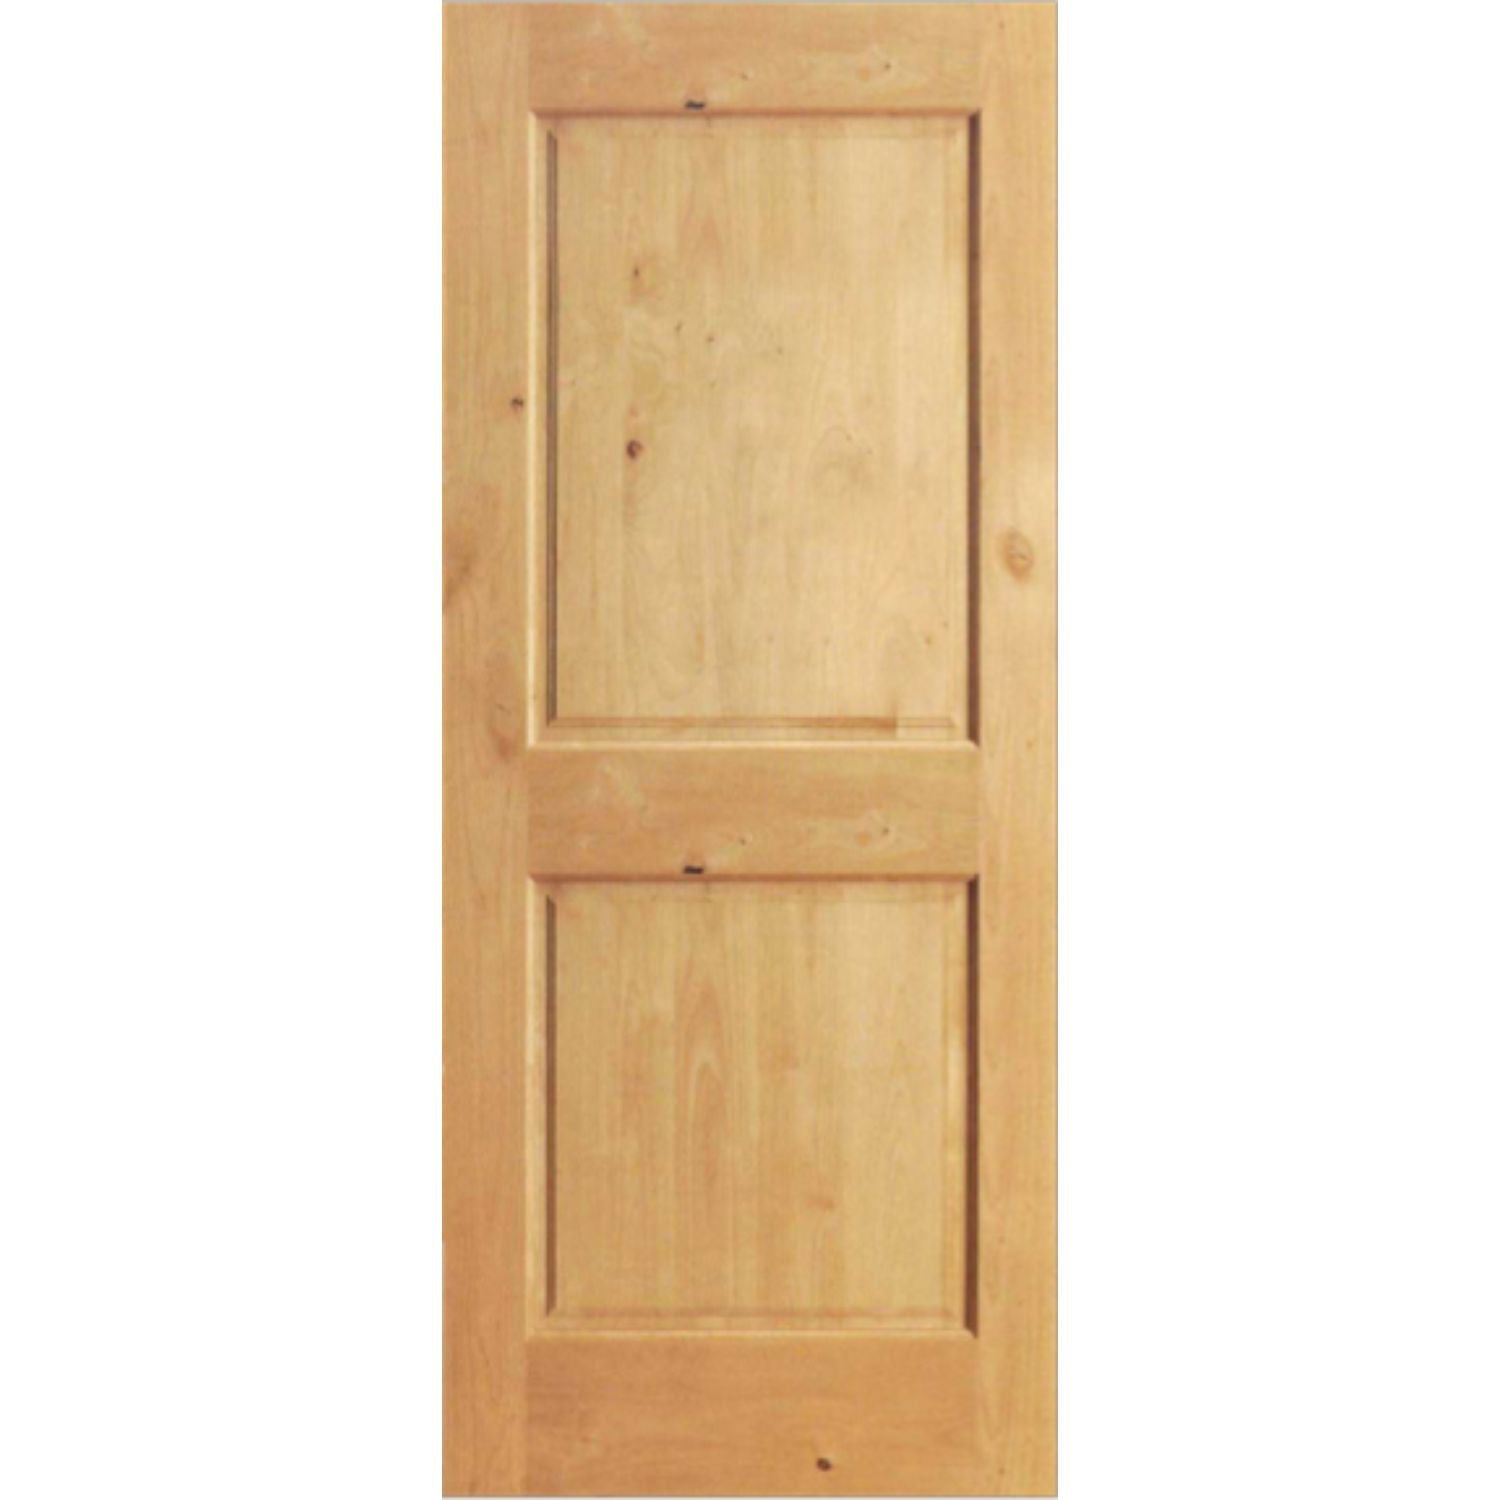 Custom Two Panel Door Project – Jeff 1 door: